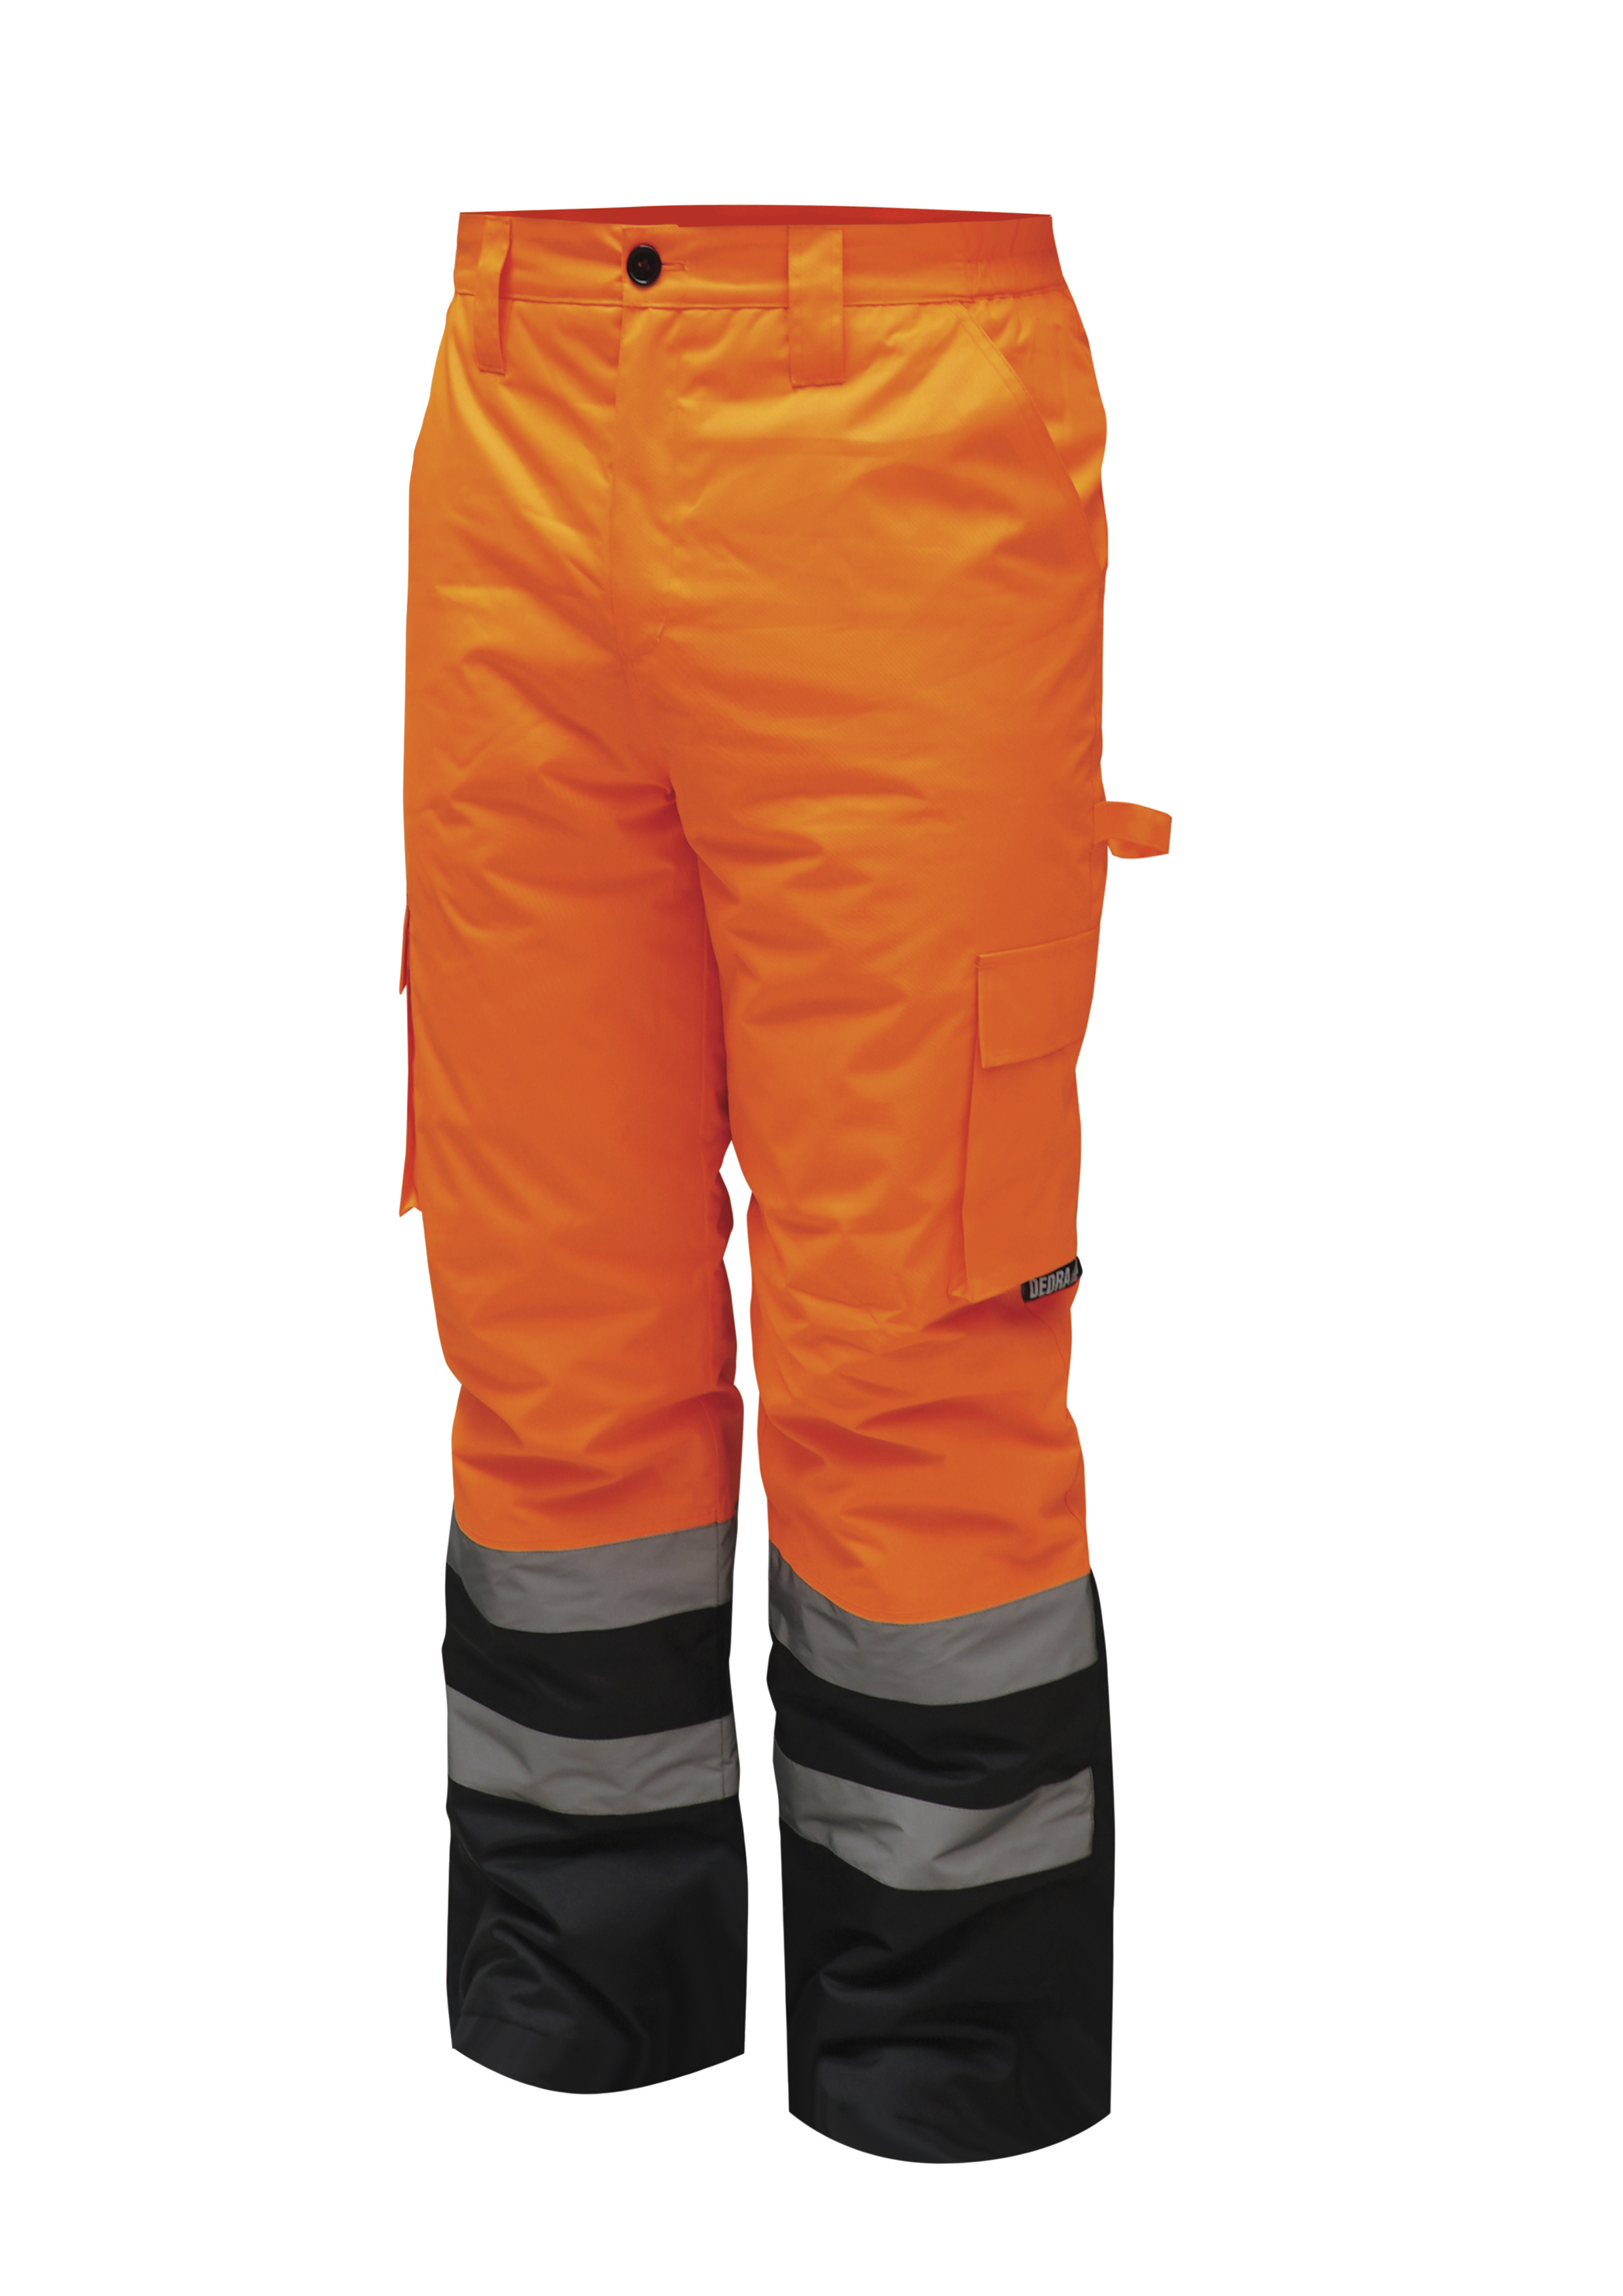 Reflexní zateplené kalhoty vel. M, oranžové DEDRA BH80SP2-M + Dárek, servis bez starostí v hodnotě 300Kč